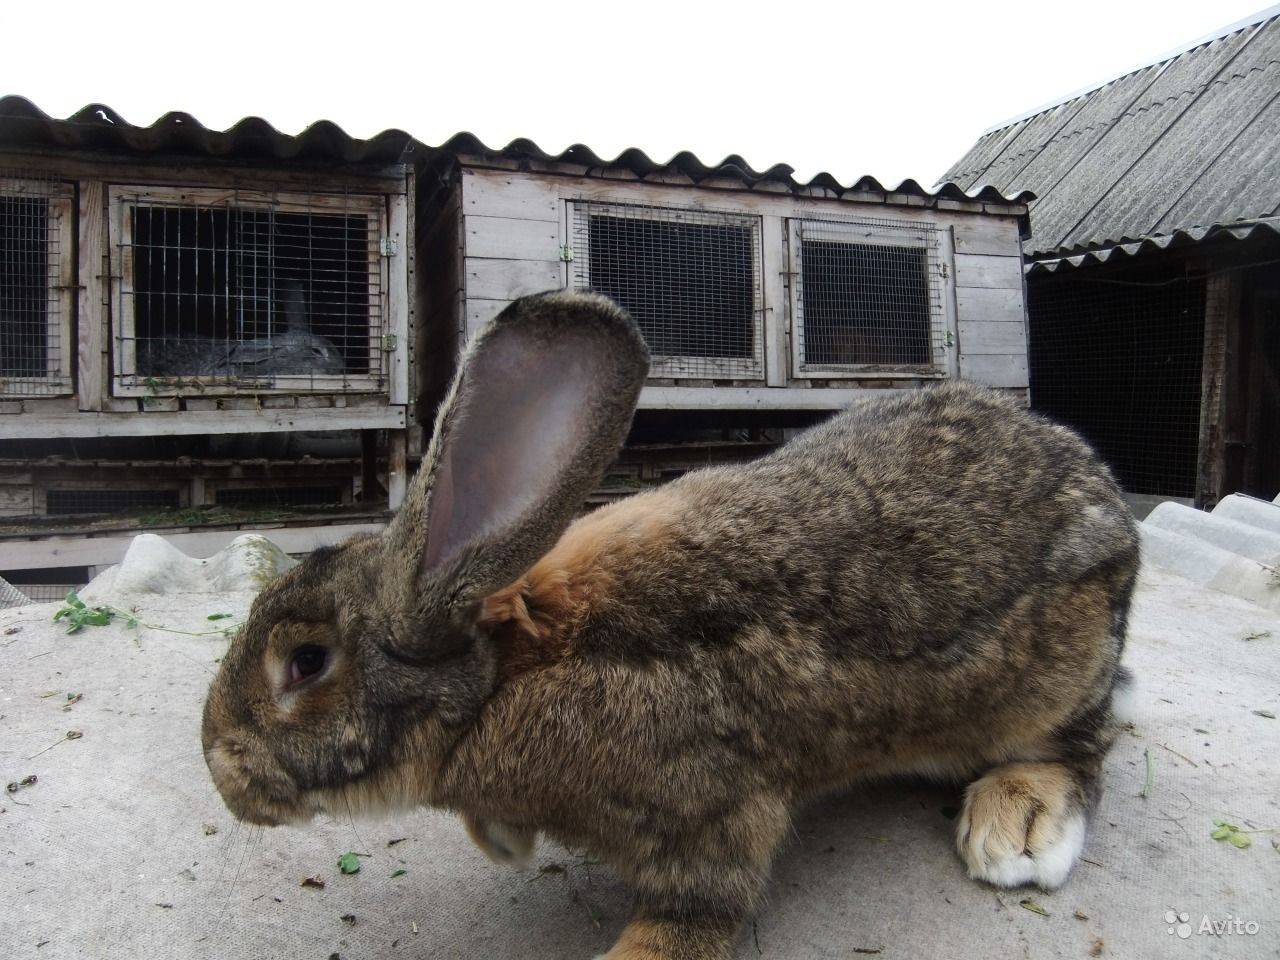 Разведение кроликов в домашних условиях: советы для начинающих